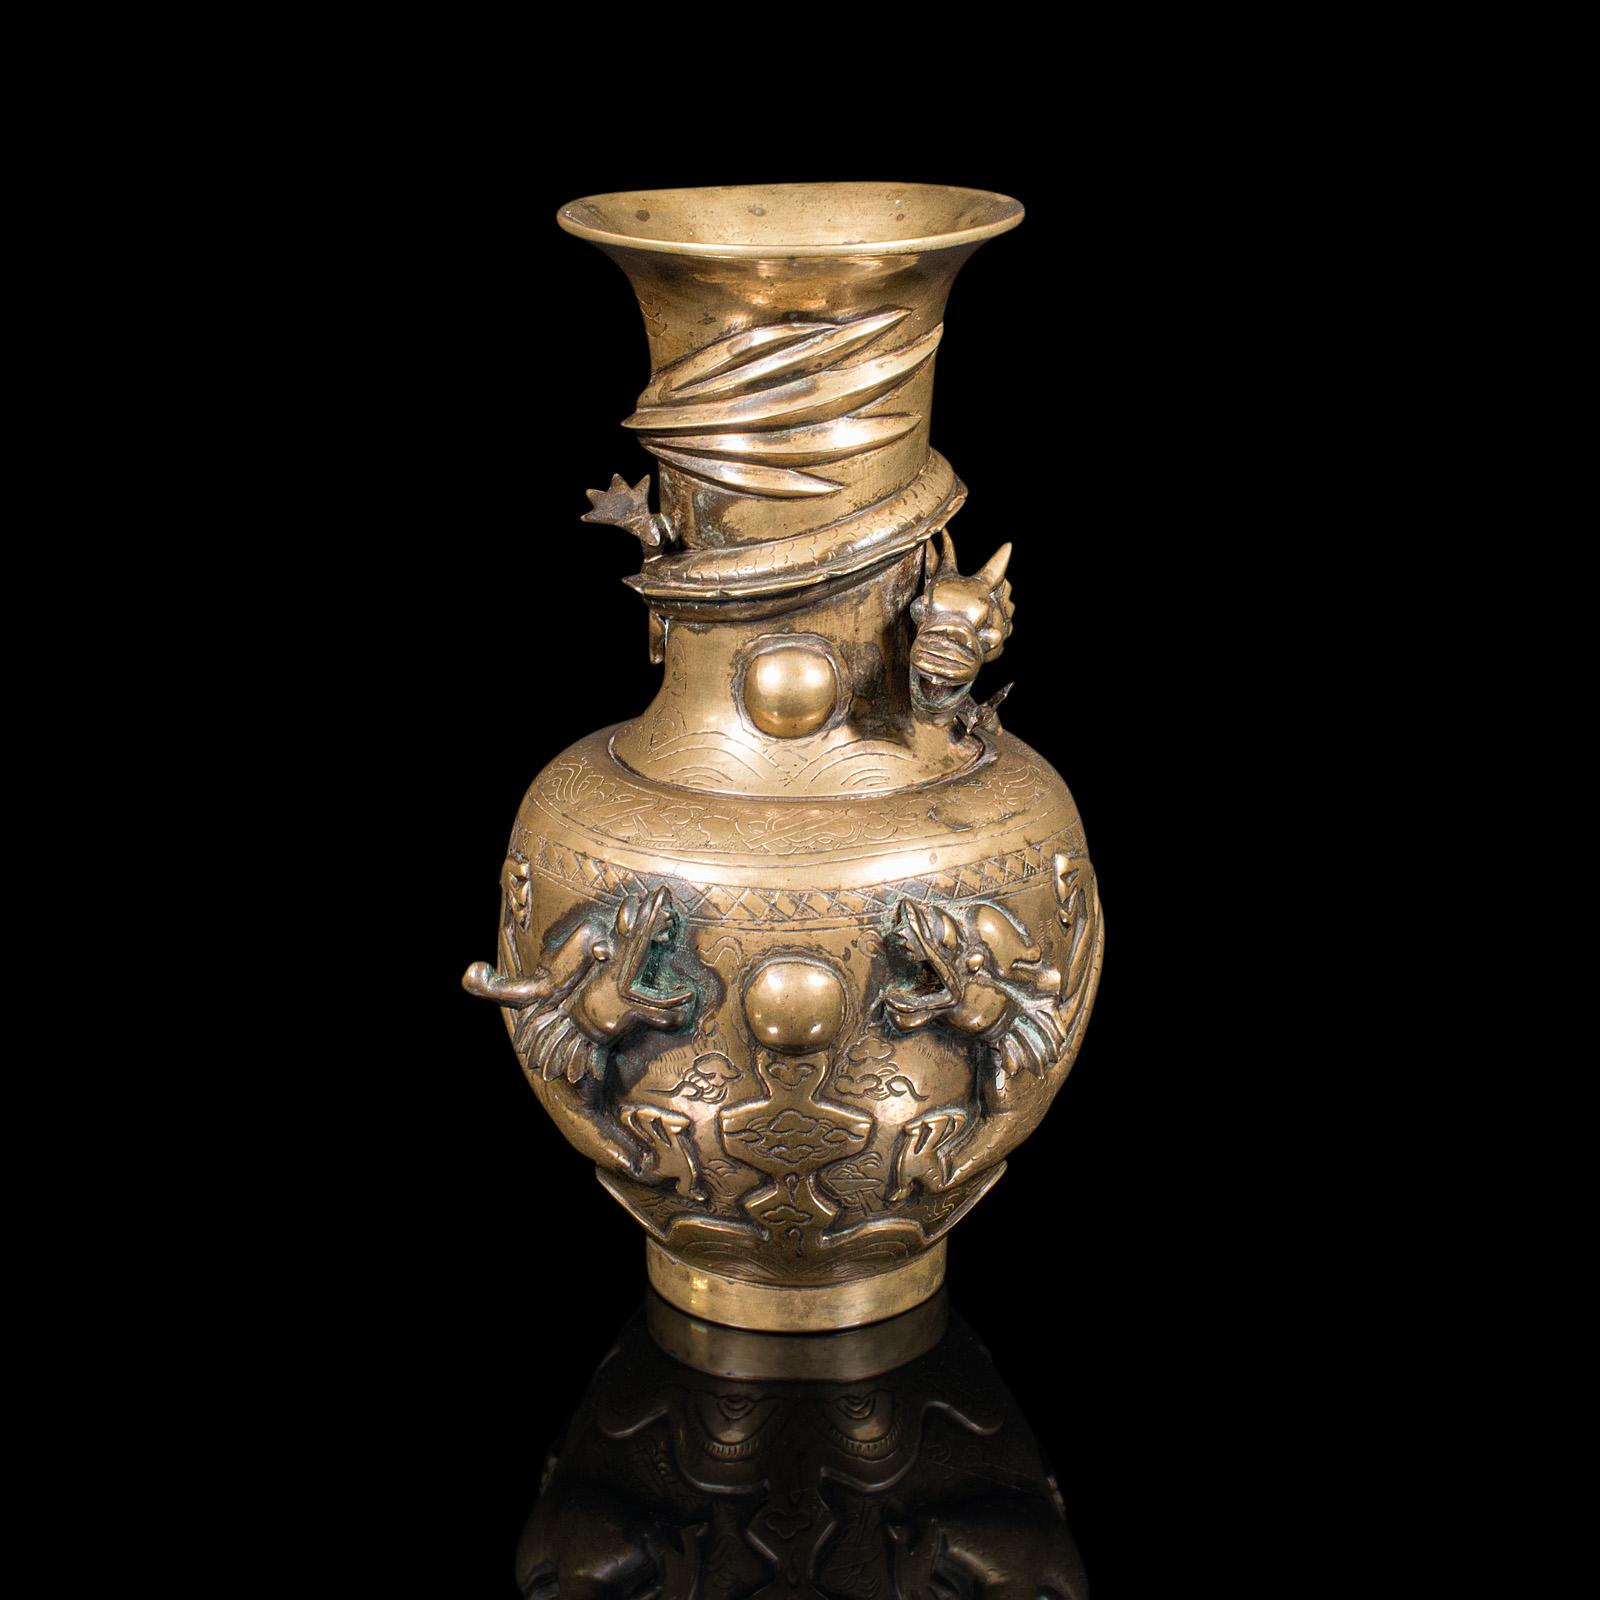 Dies ist eine antike dekorative Vase. Eine chinesische Blumenurne aus Messing mit Drachenmotiv, aus der viktorianischen Zeit, um 1880.

Wunderschöne Reliefform mit ansprechender Farbe
Zeigt eine wünschenswerte gealterte Patina - kleiner Verlust an